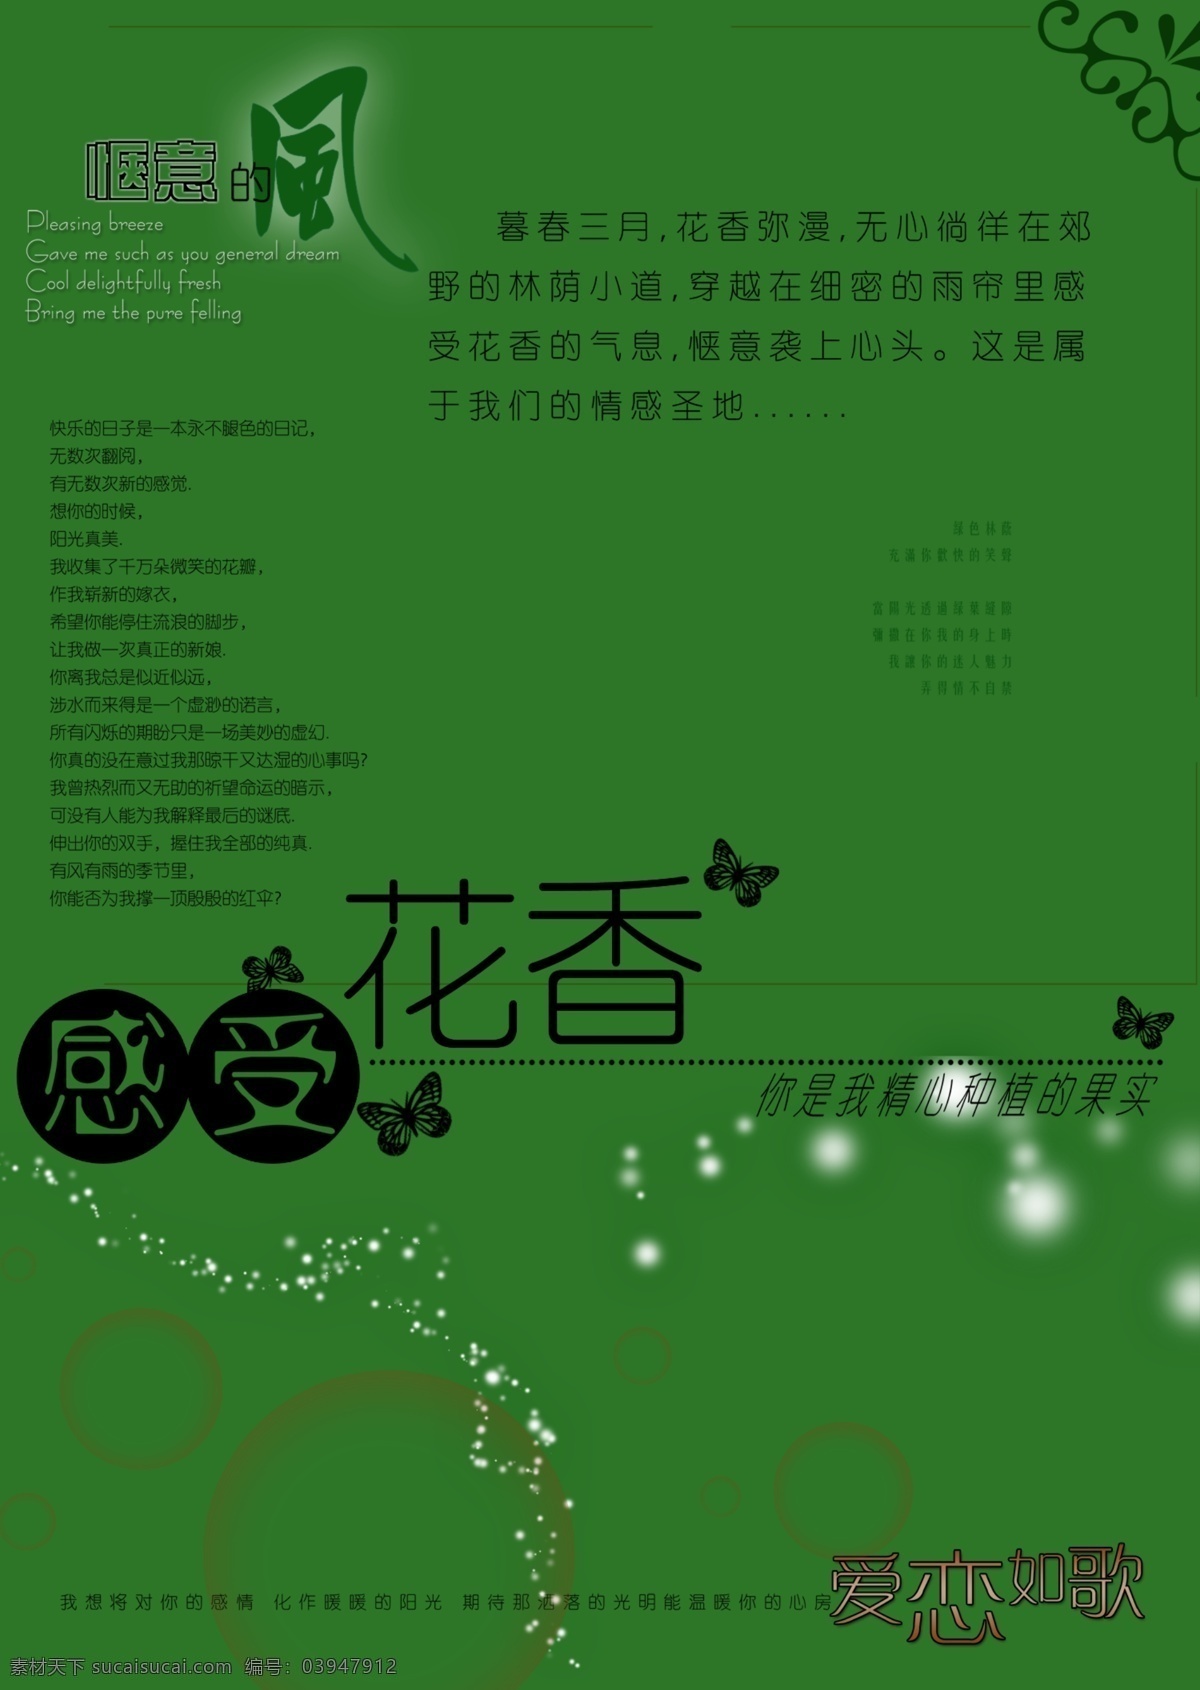 个性 写真 字体 模板 贺卡 写真字体 签名图 中文字体 字体下载 源文件